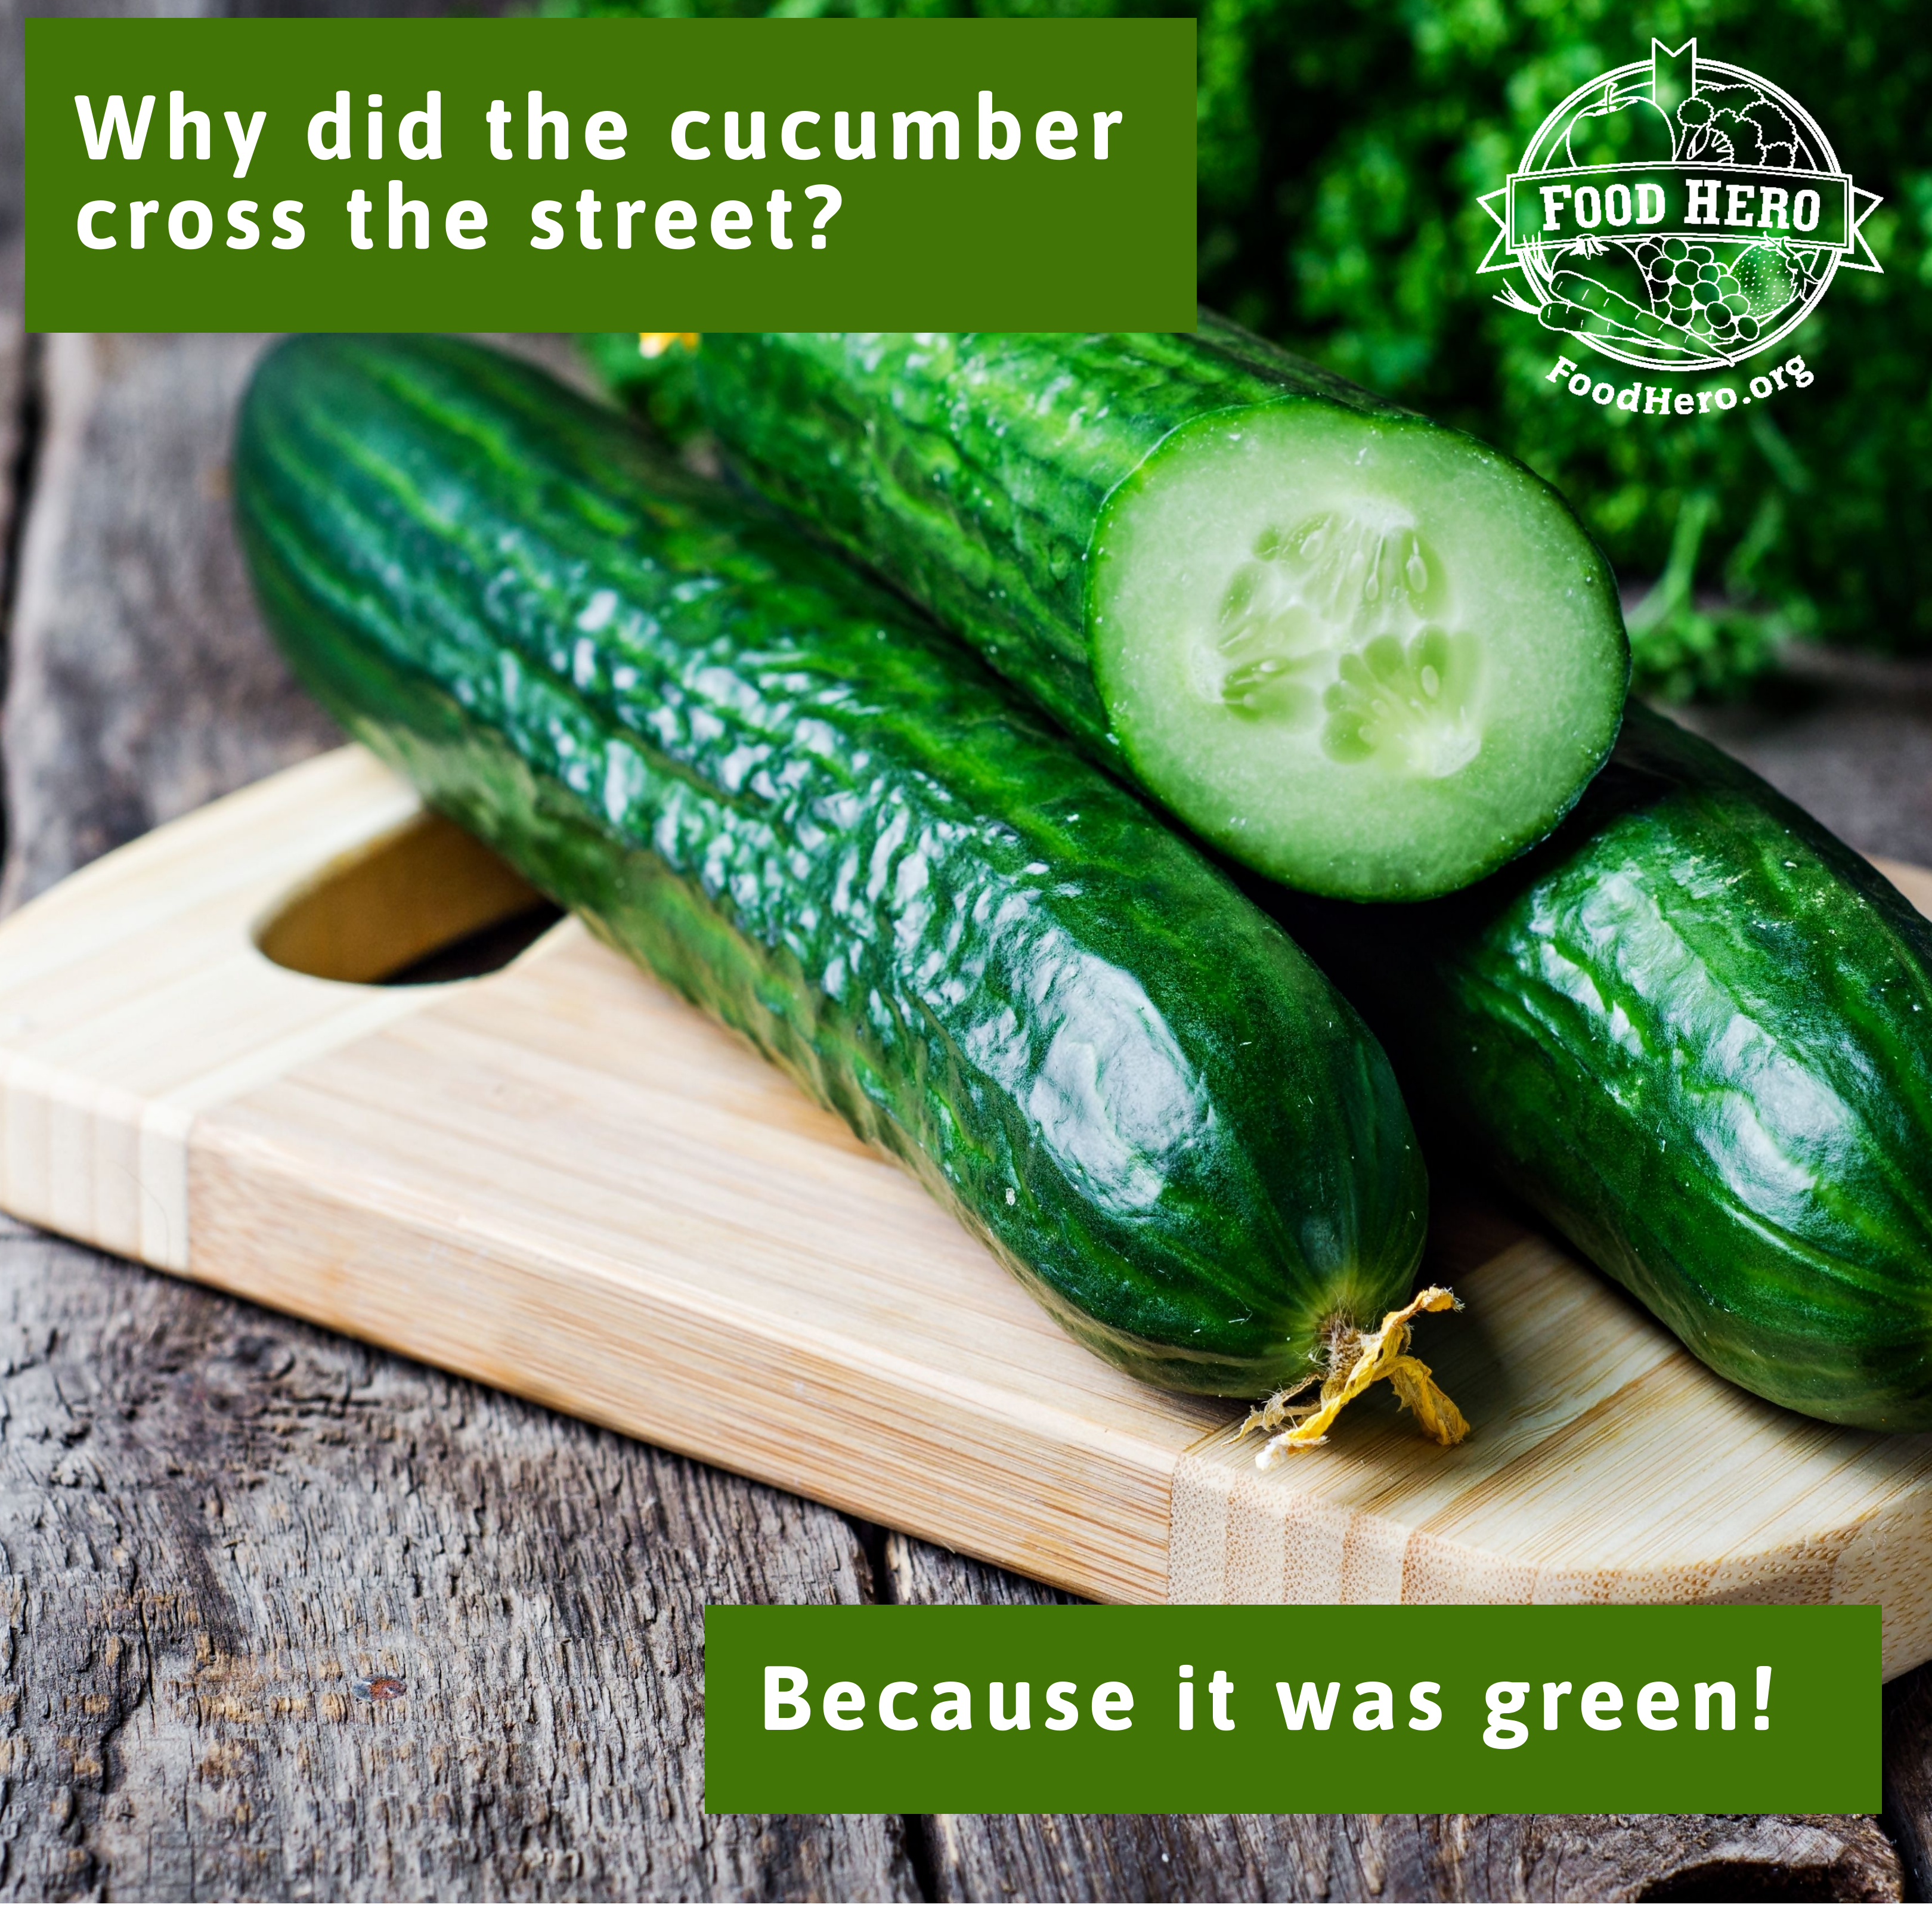 "Cucumber Joke Image"